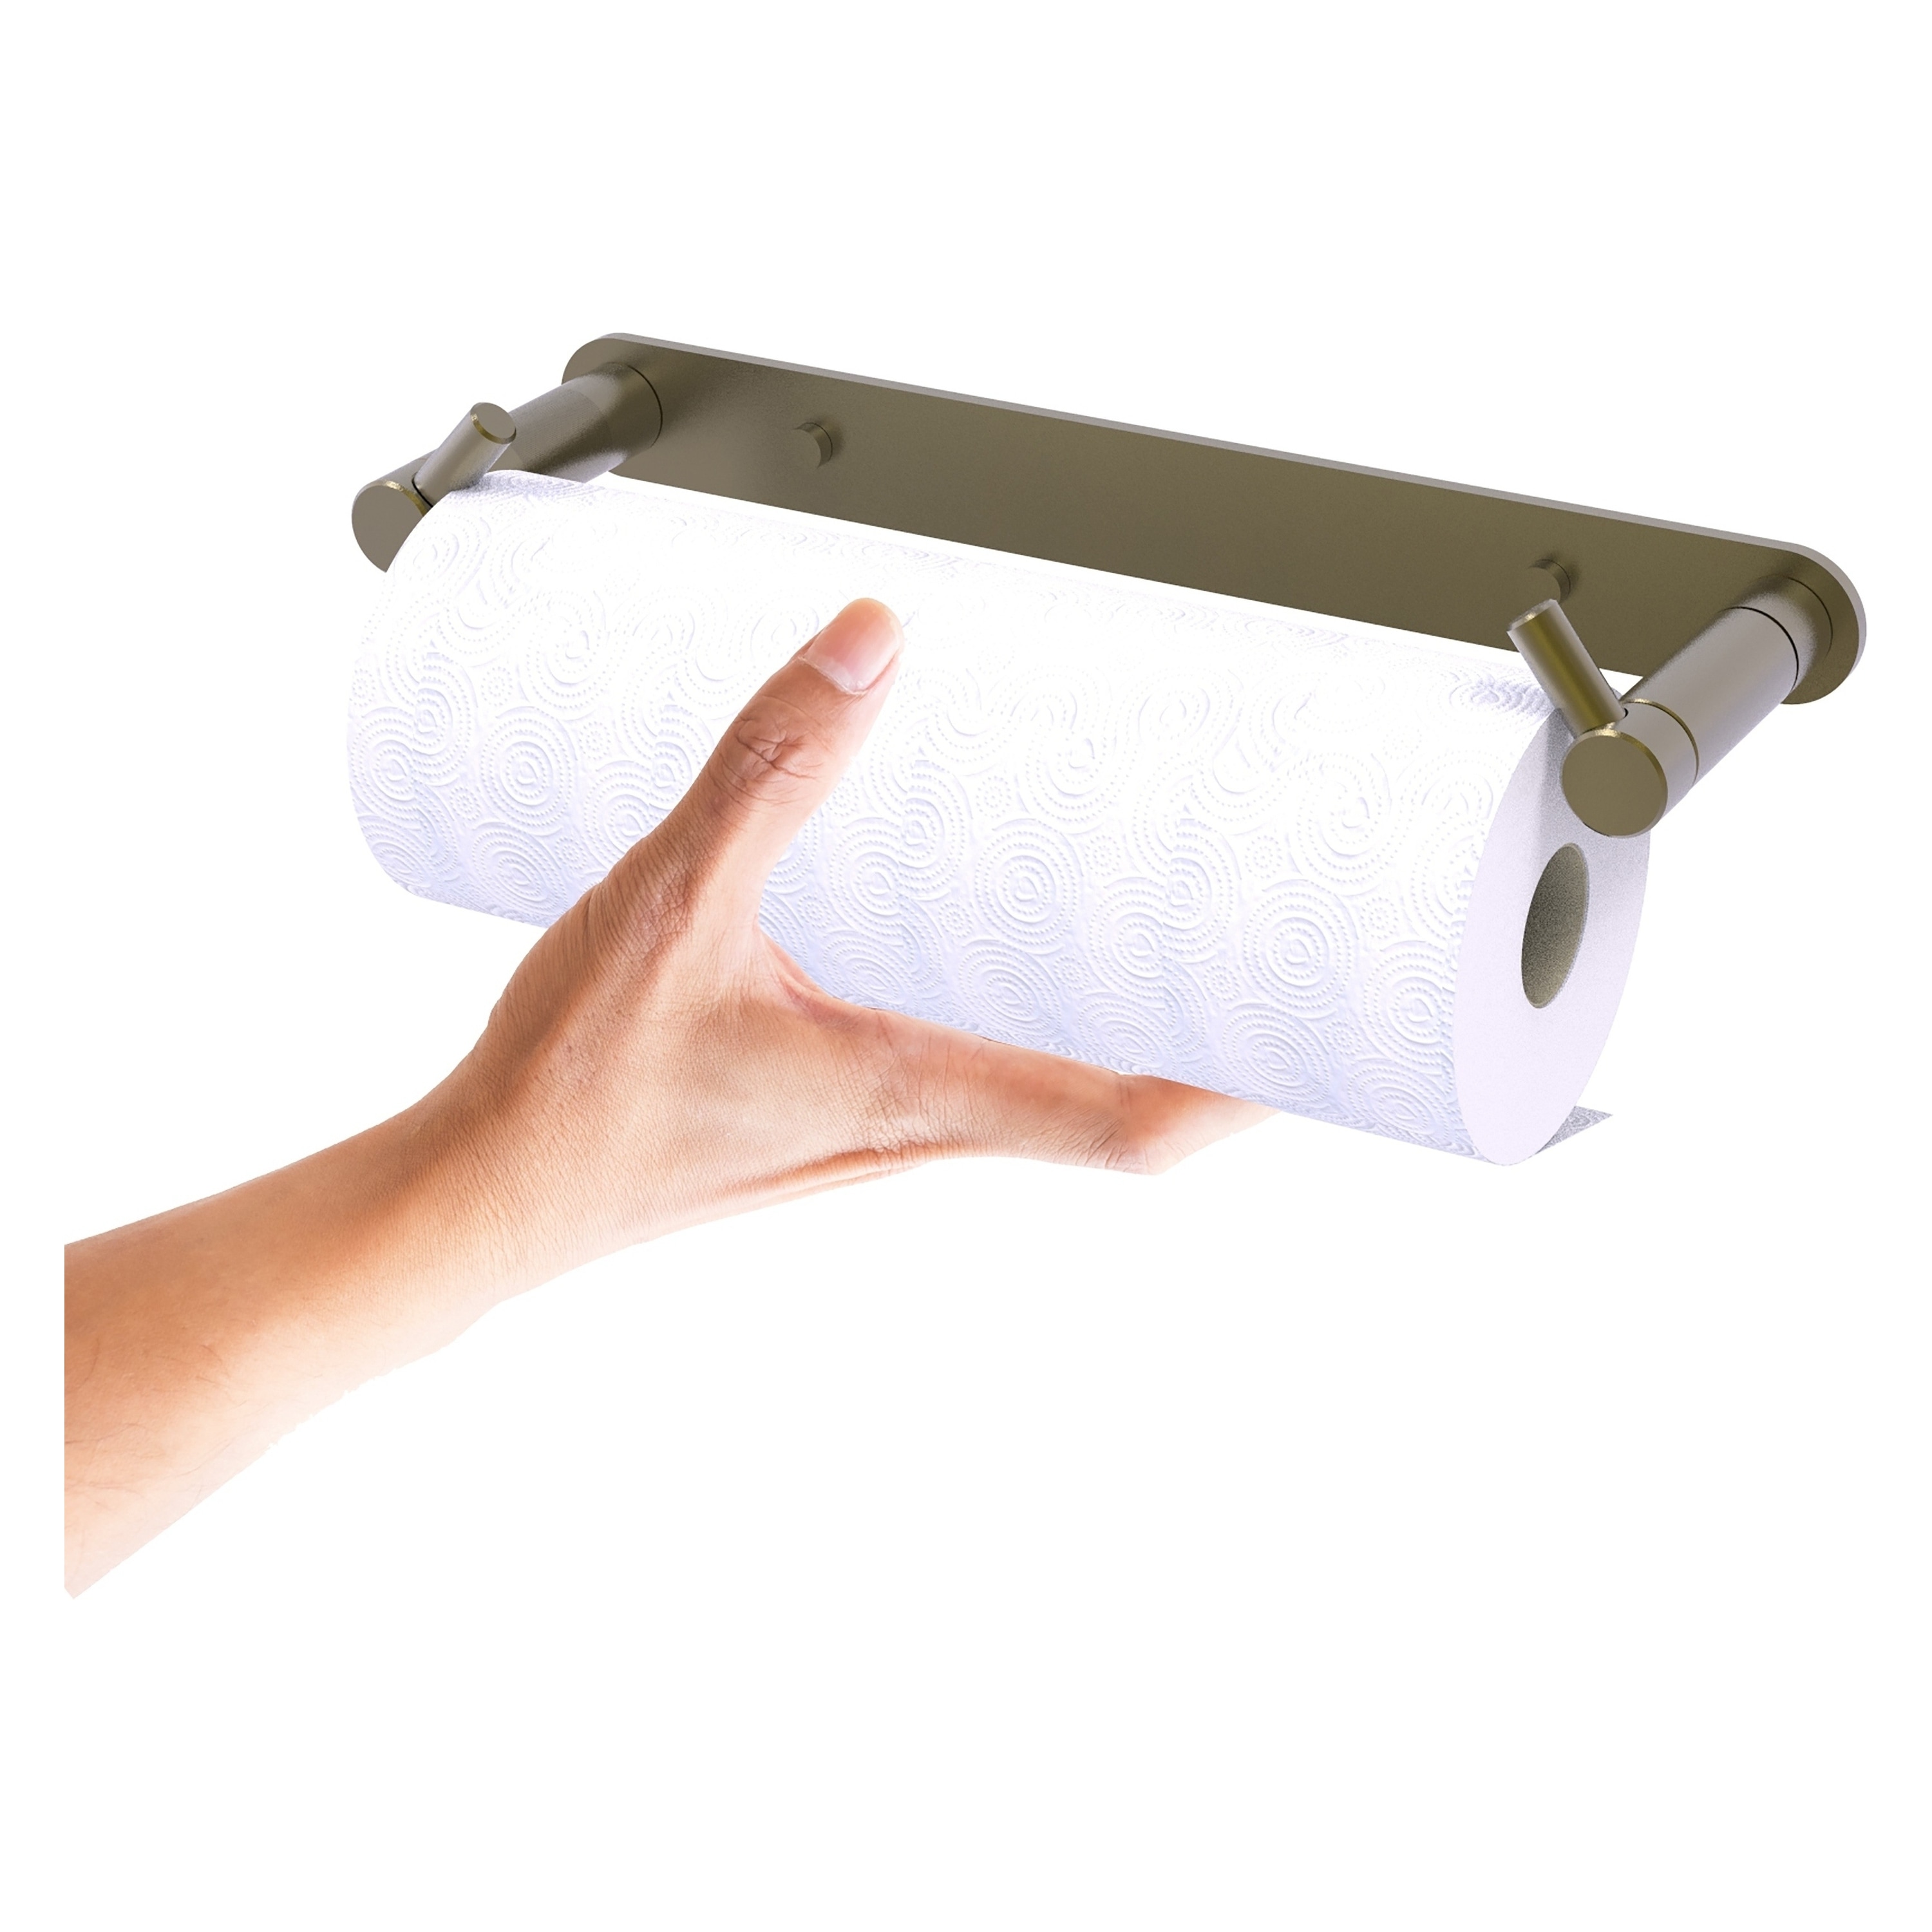 Umbra Nickel Metal Wall-mount Paper Towel Holder